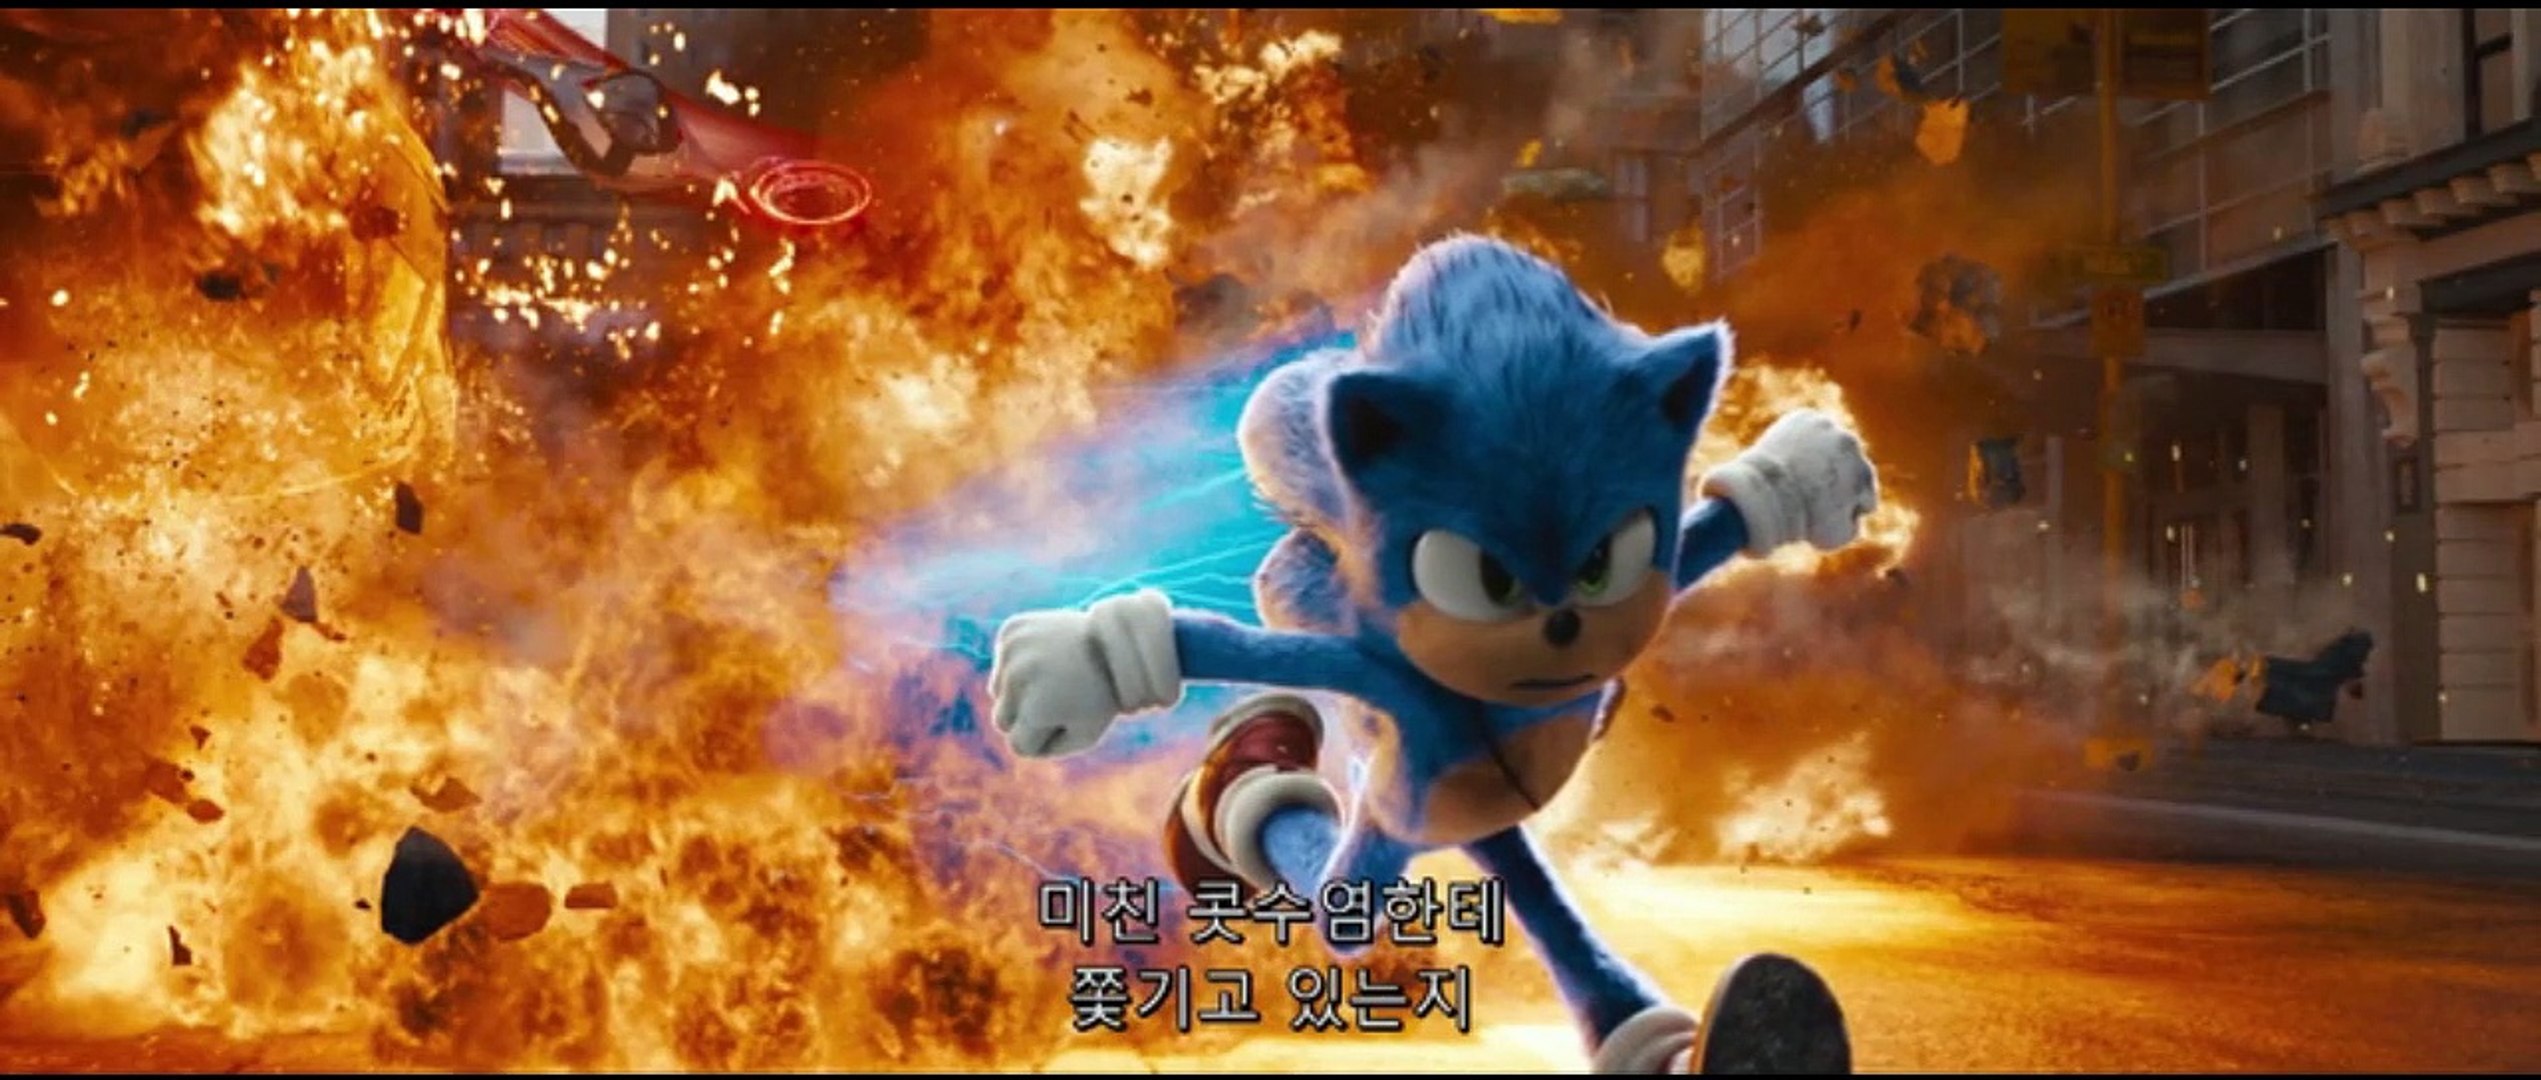 Watch Hyper Sonic Full movie Online In HD